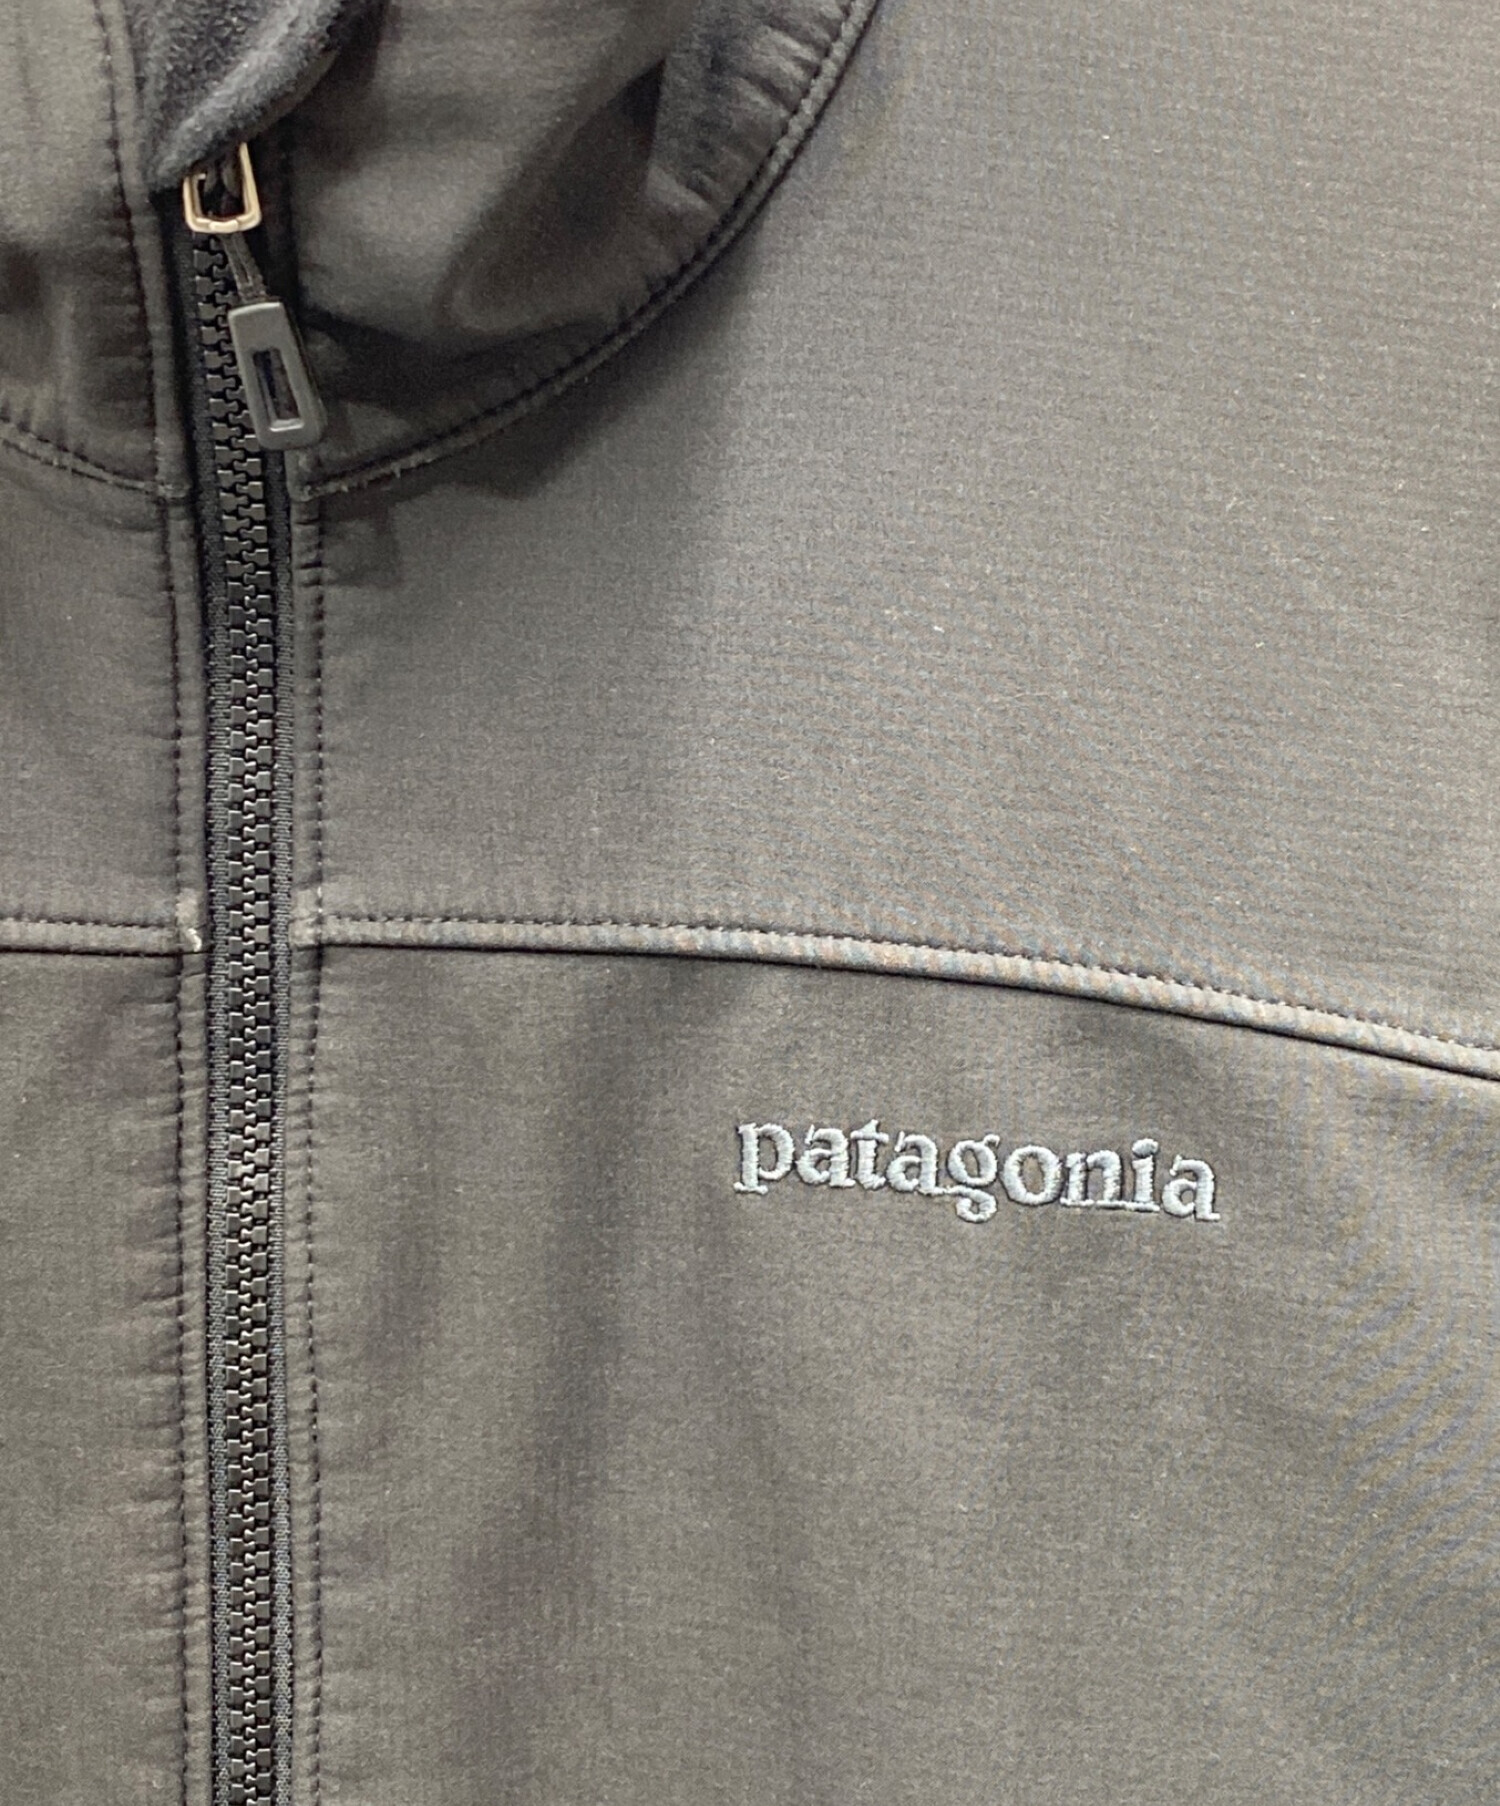 Patagonia (パタゴニア) アズ ハイブリッド ジャケット ブラック サイズ:M